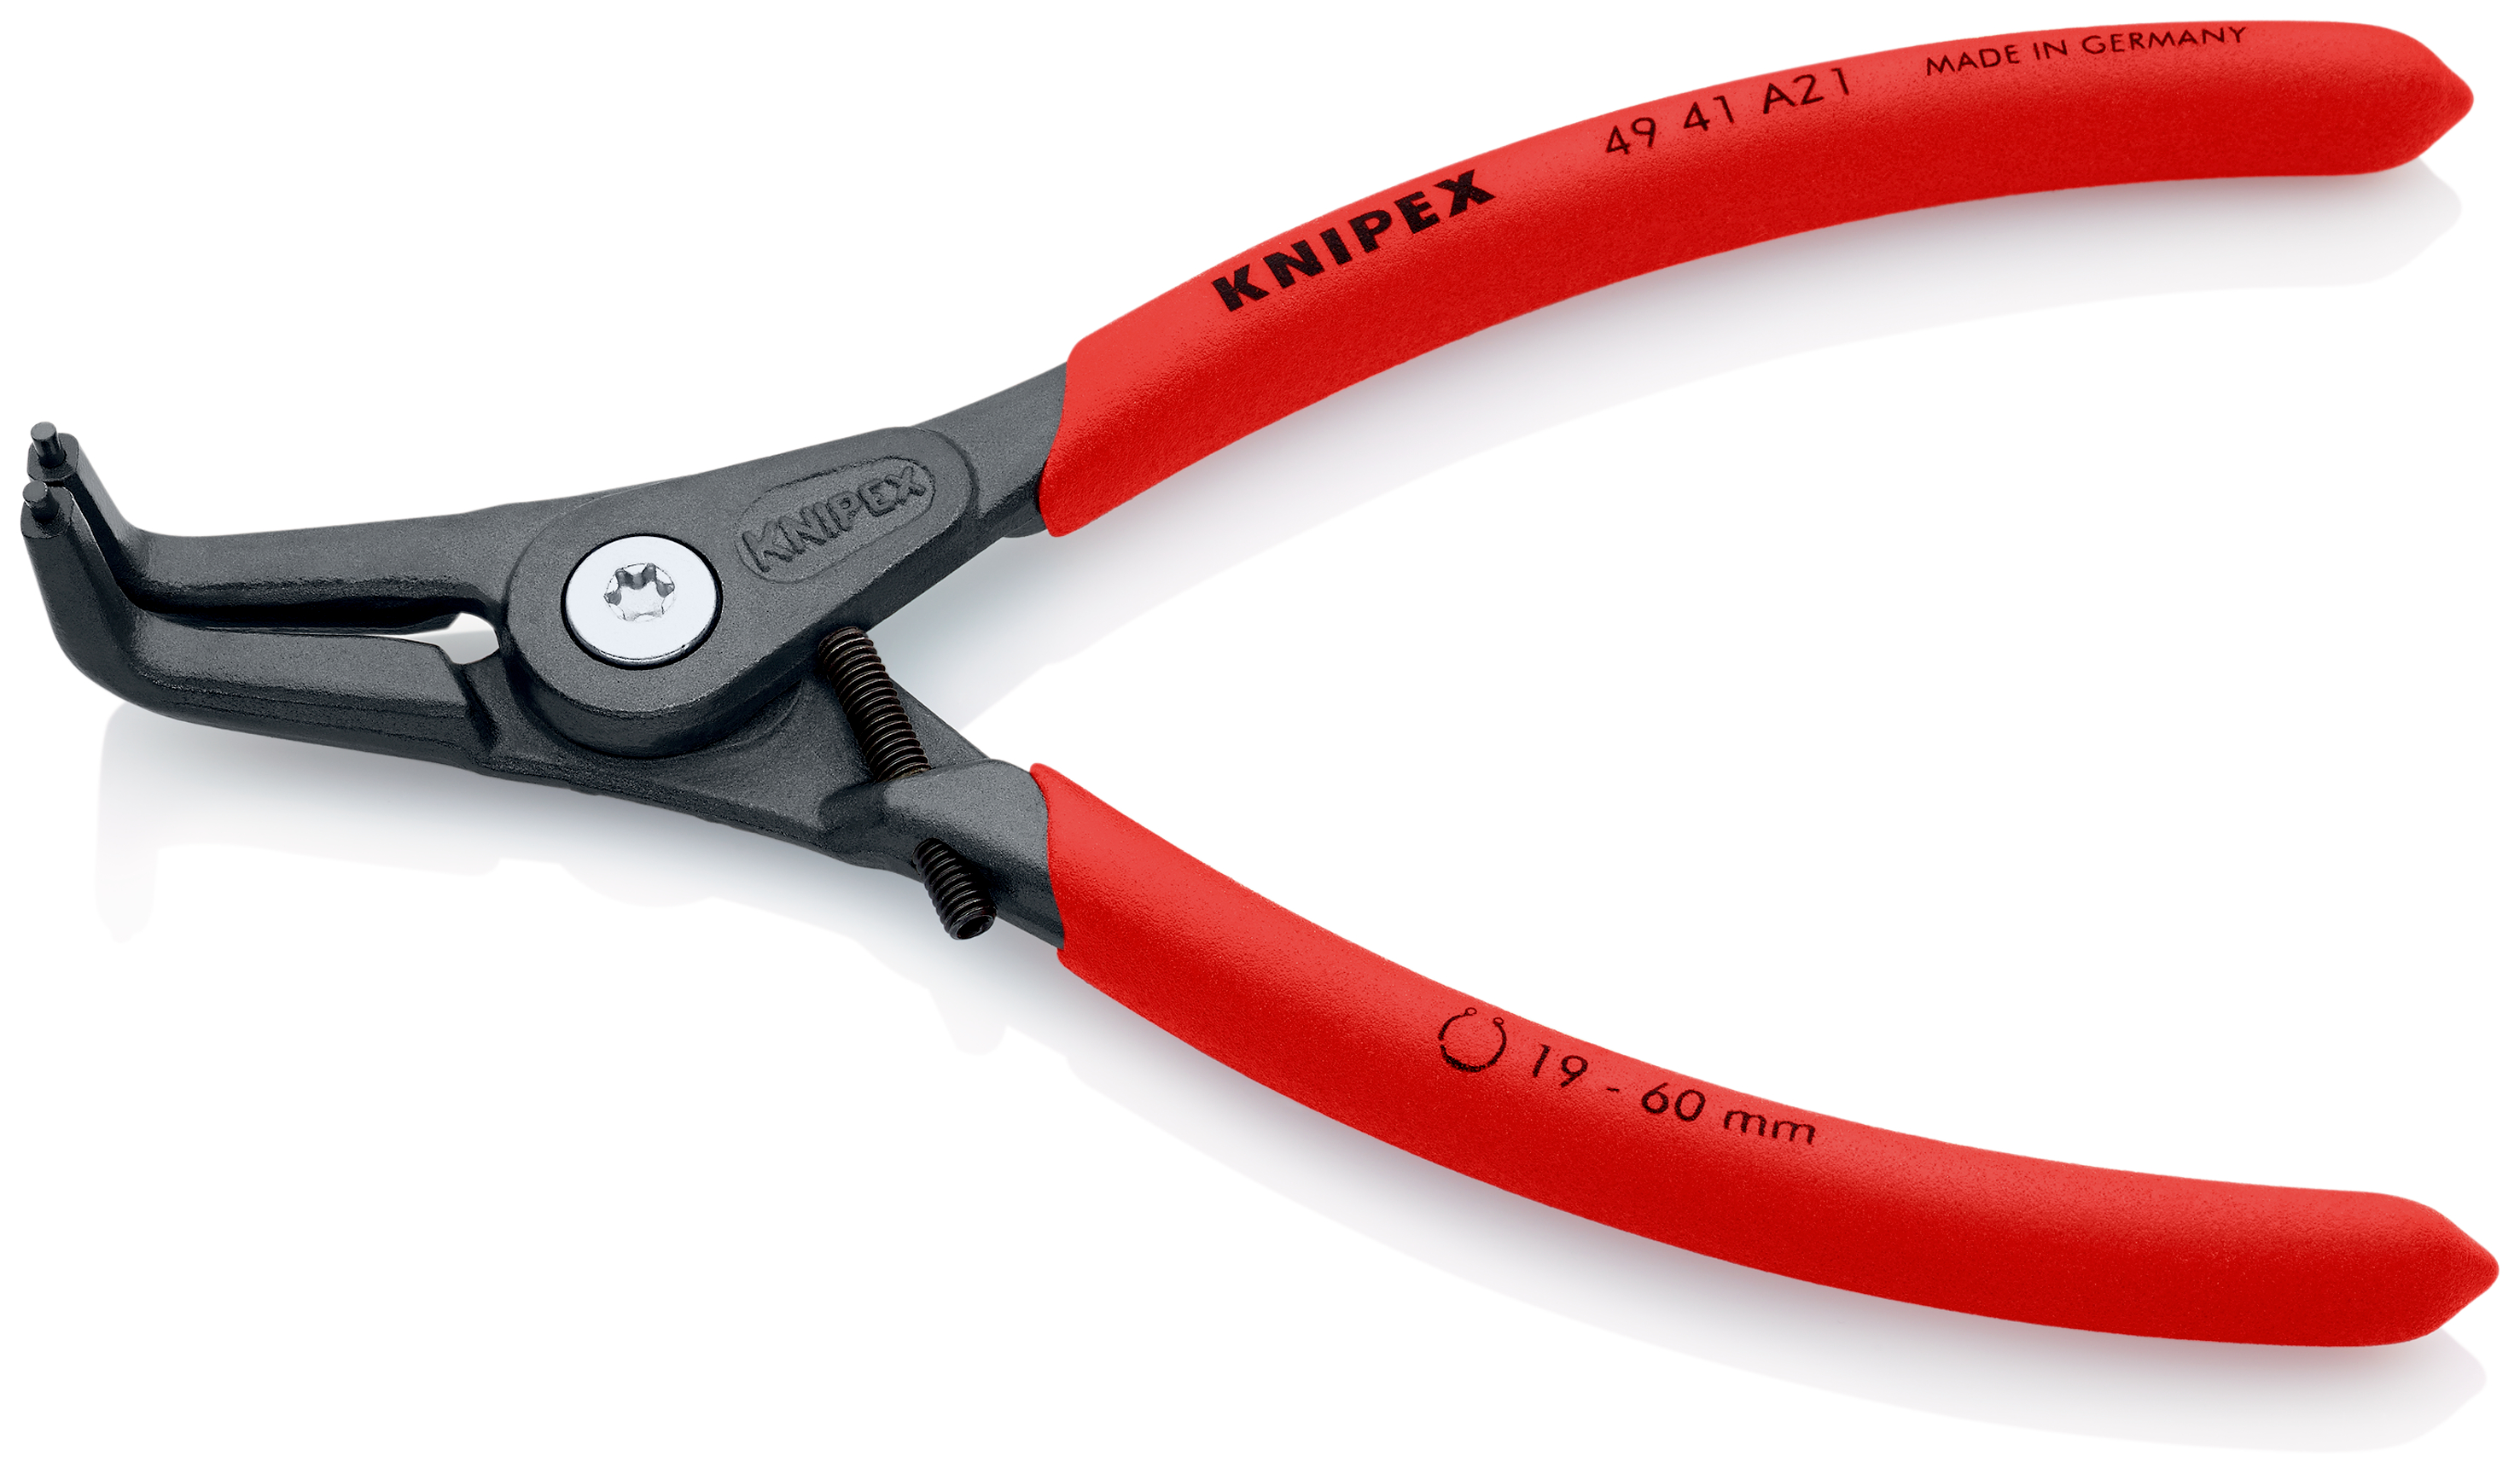 Knipex 4941A21 Cleste pentru inele de siguranță de exterior, manere acoperite cu material plastic aderent, lungime 165 mm